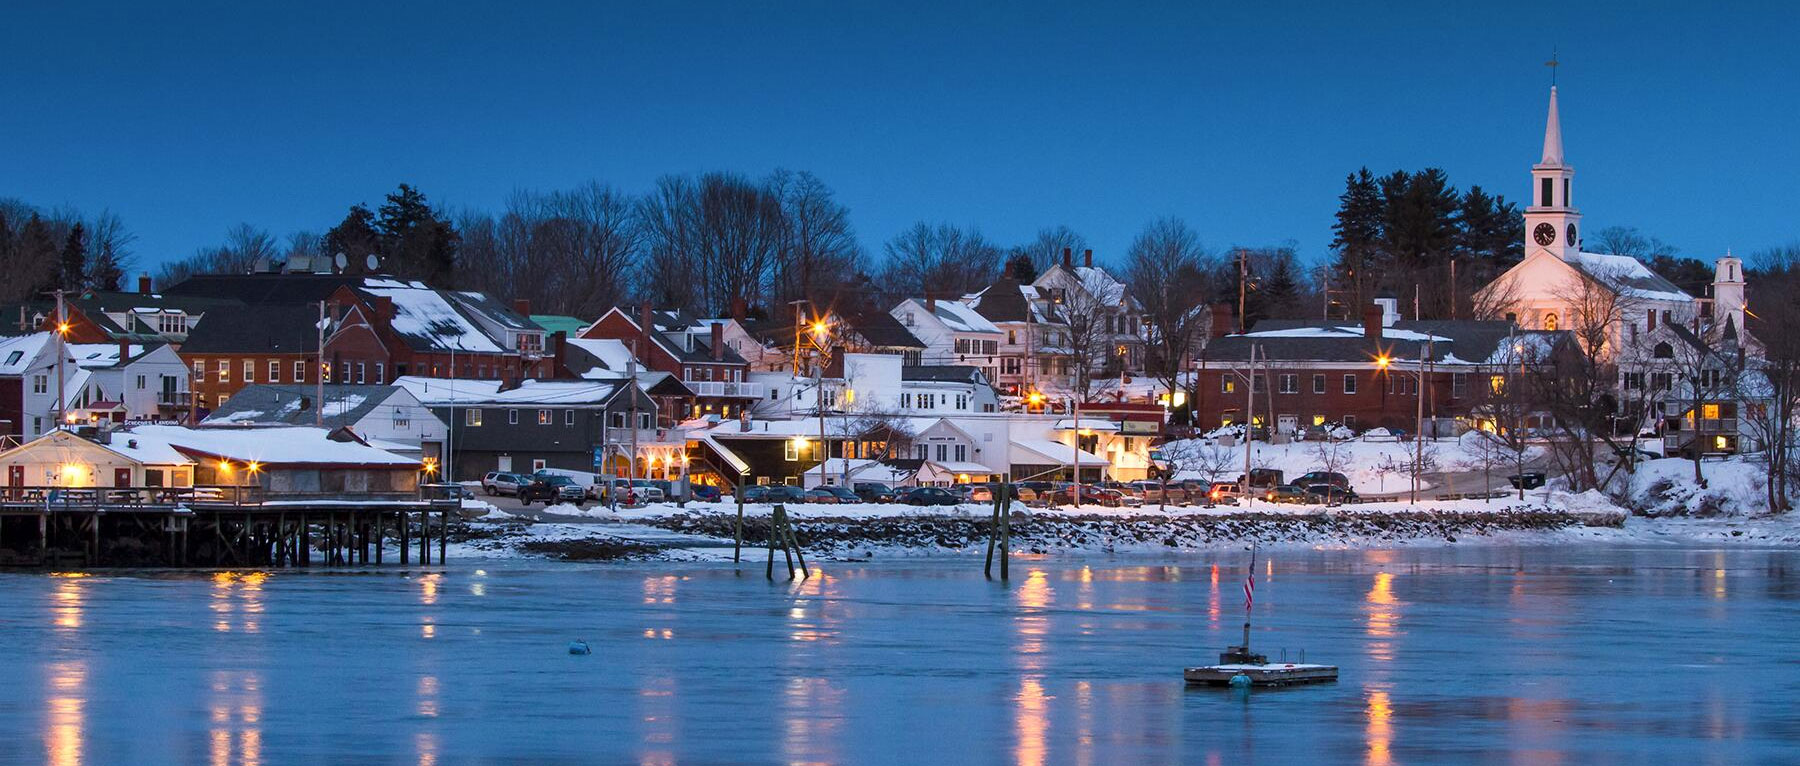 Winter in Damariscotta, Maine - Photo Credit Shutterstock